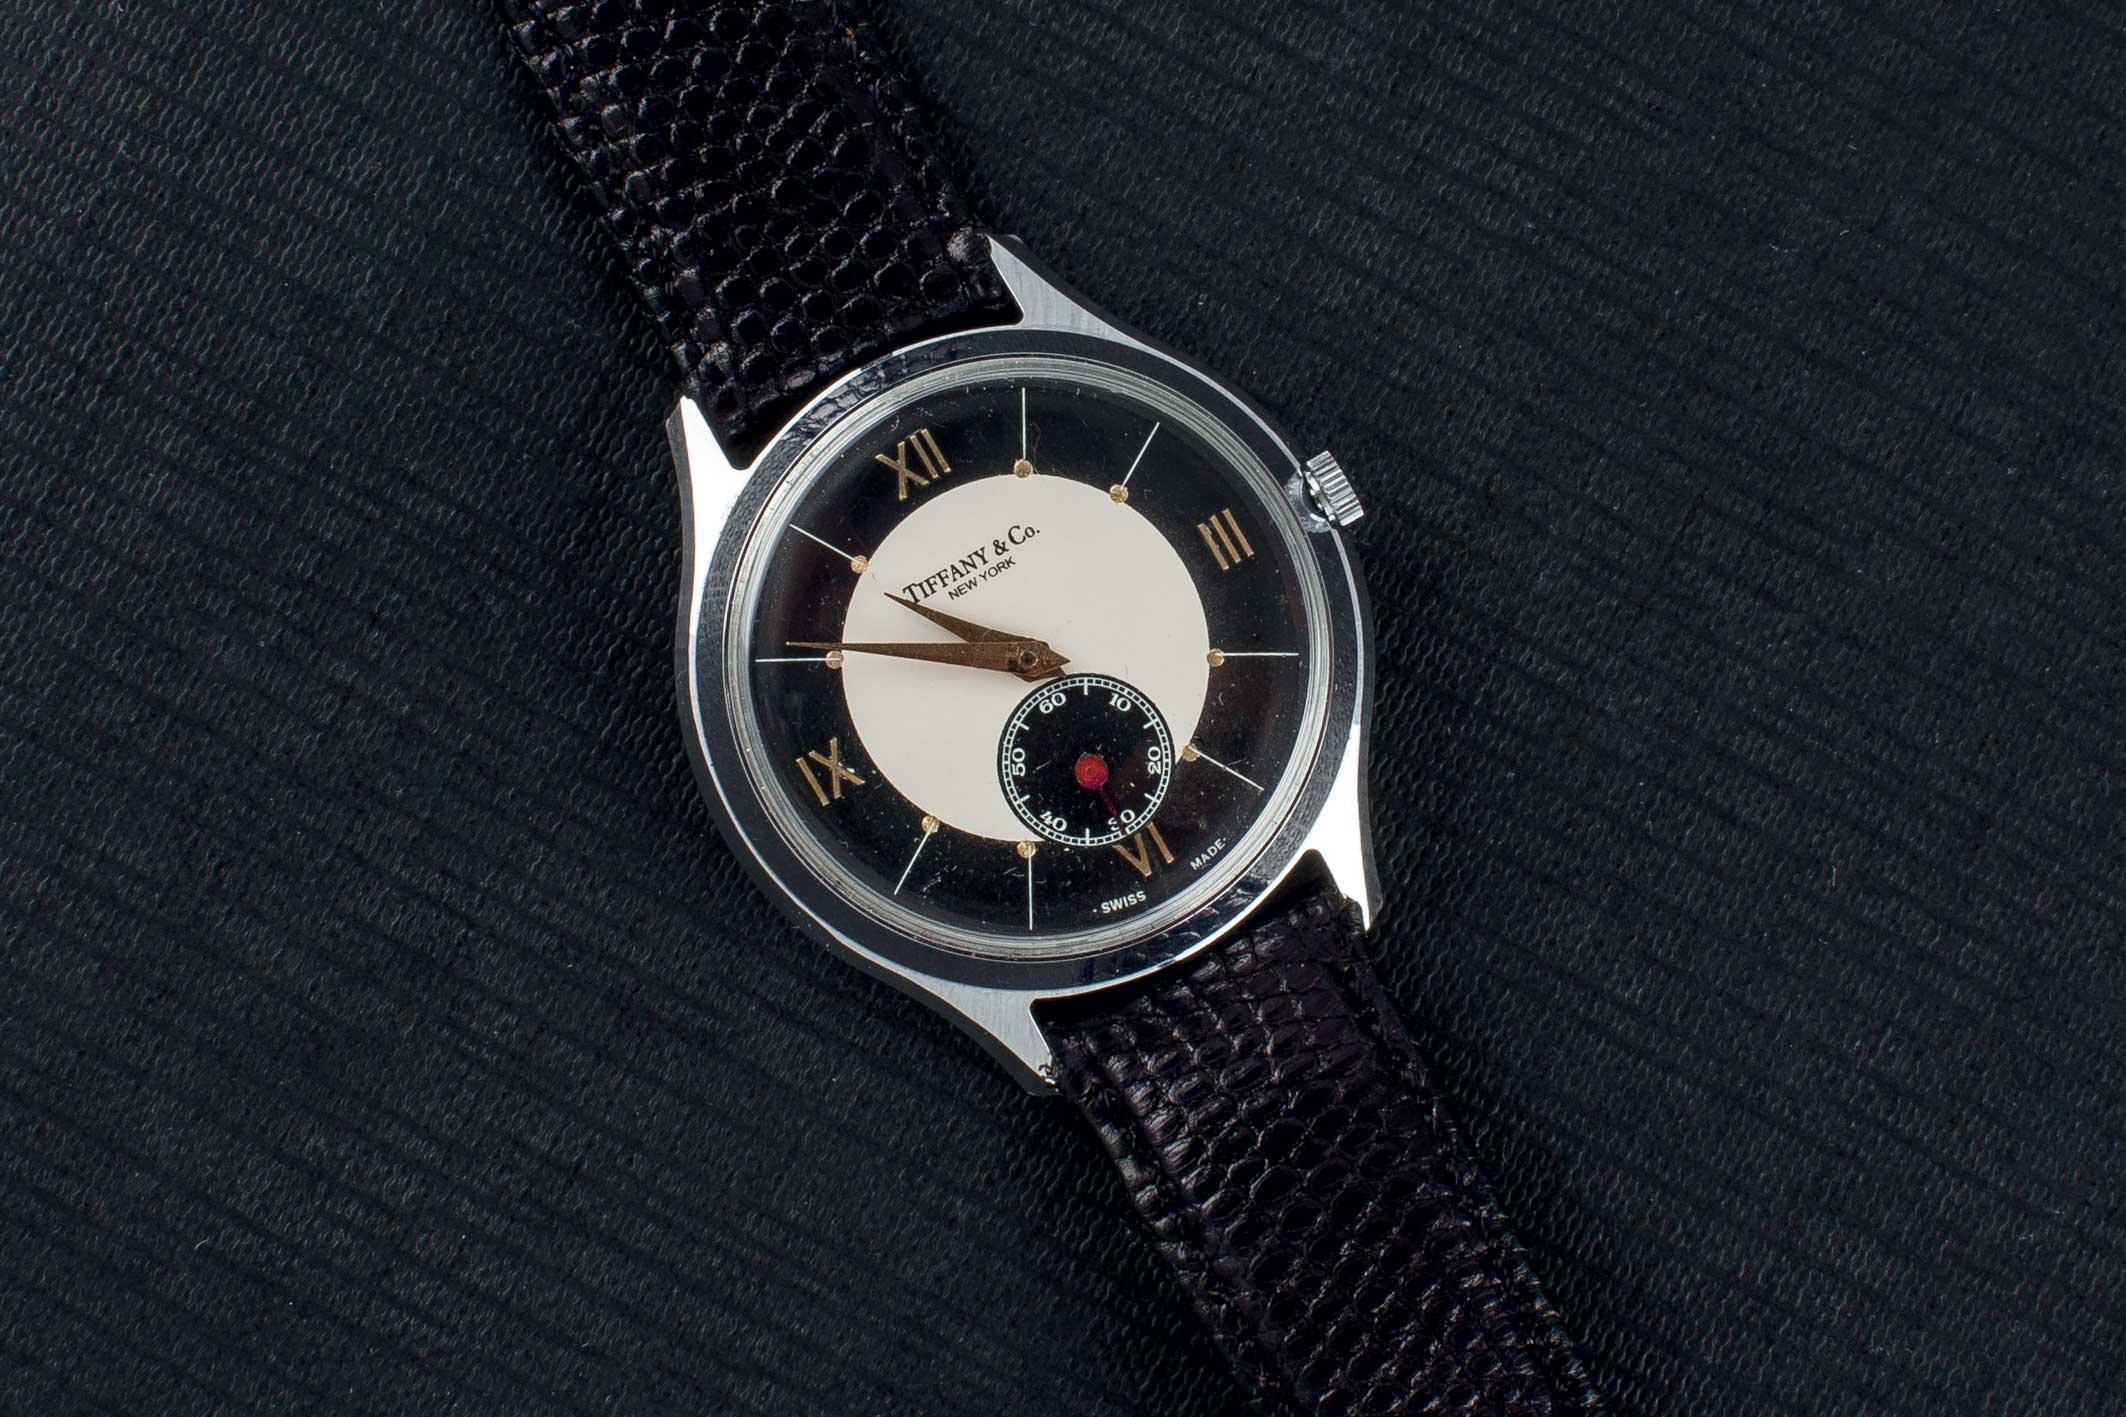 A Tiffany steel wrist watch. Reloj de pulsera para caballero marca TIFFANY, realizado en acero.